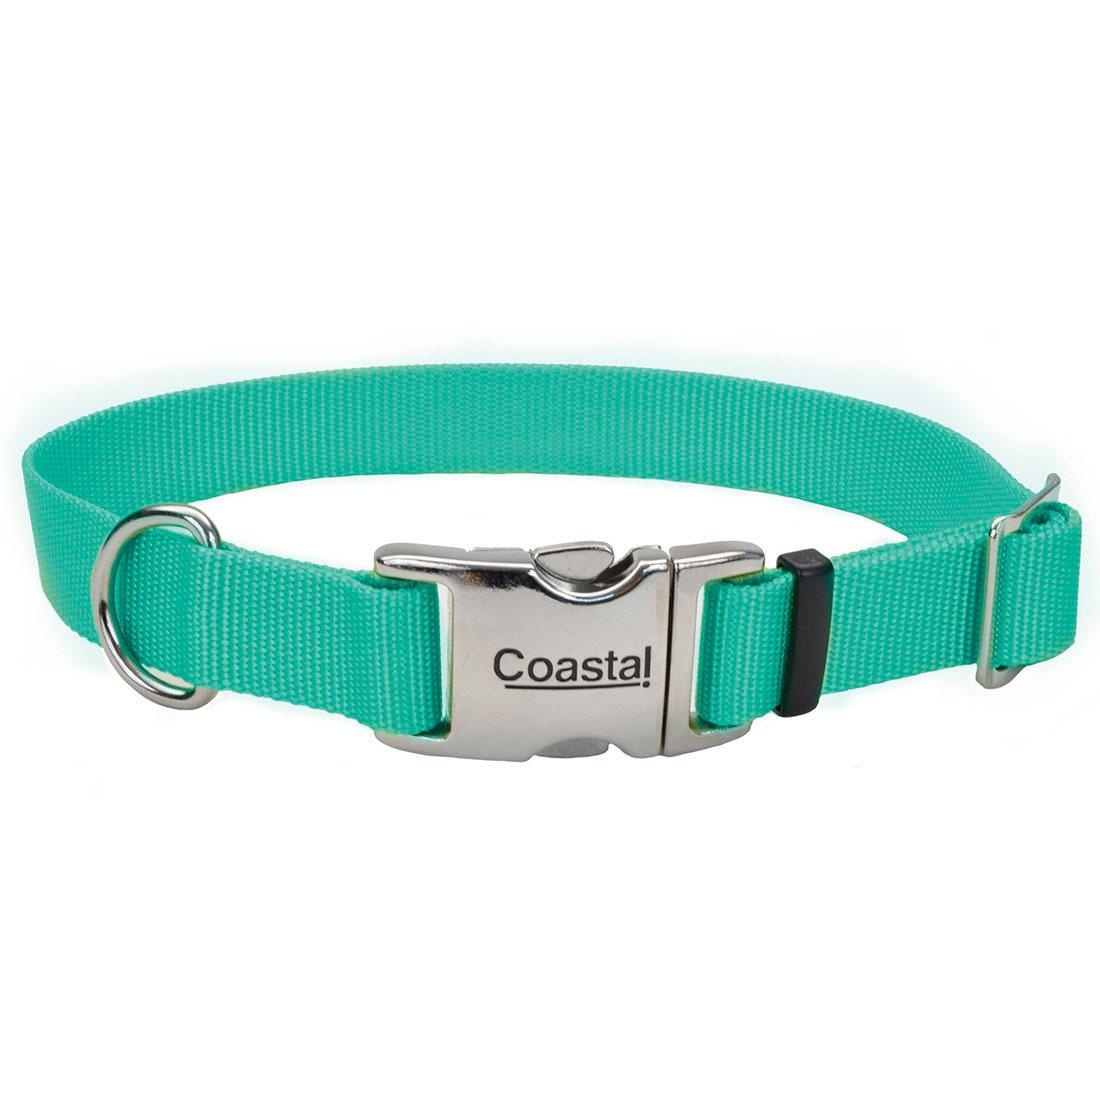 Coastal Pet Coastal adjustable Dog Collar Teal 3/4x 14-20"